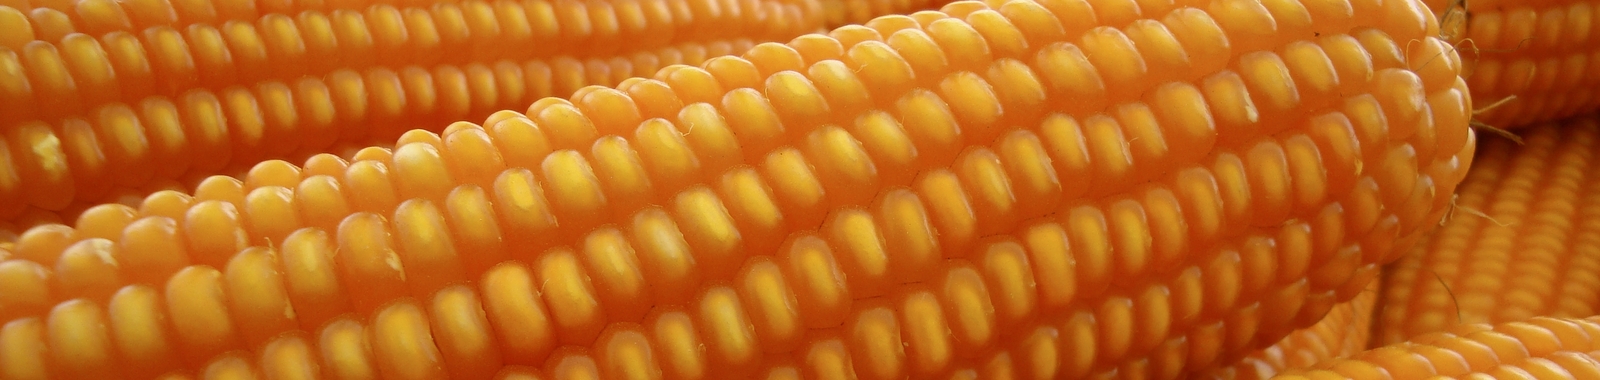 Incrementar el tamaño y la cantidad de granos en maíz